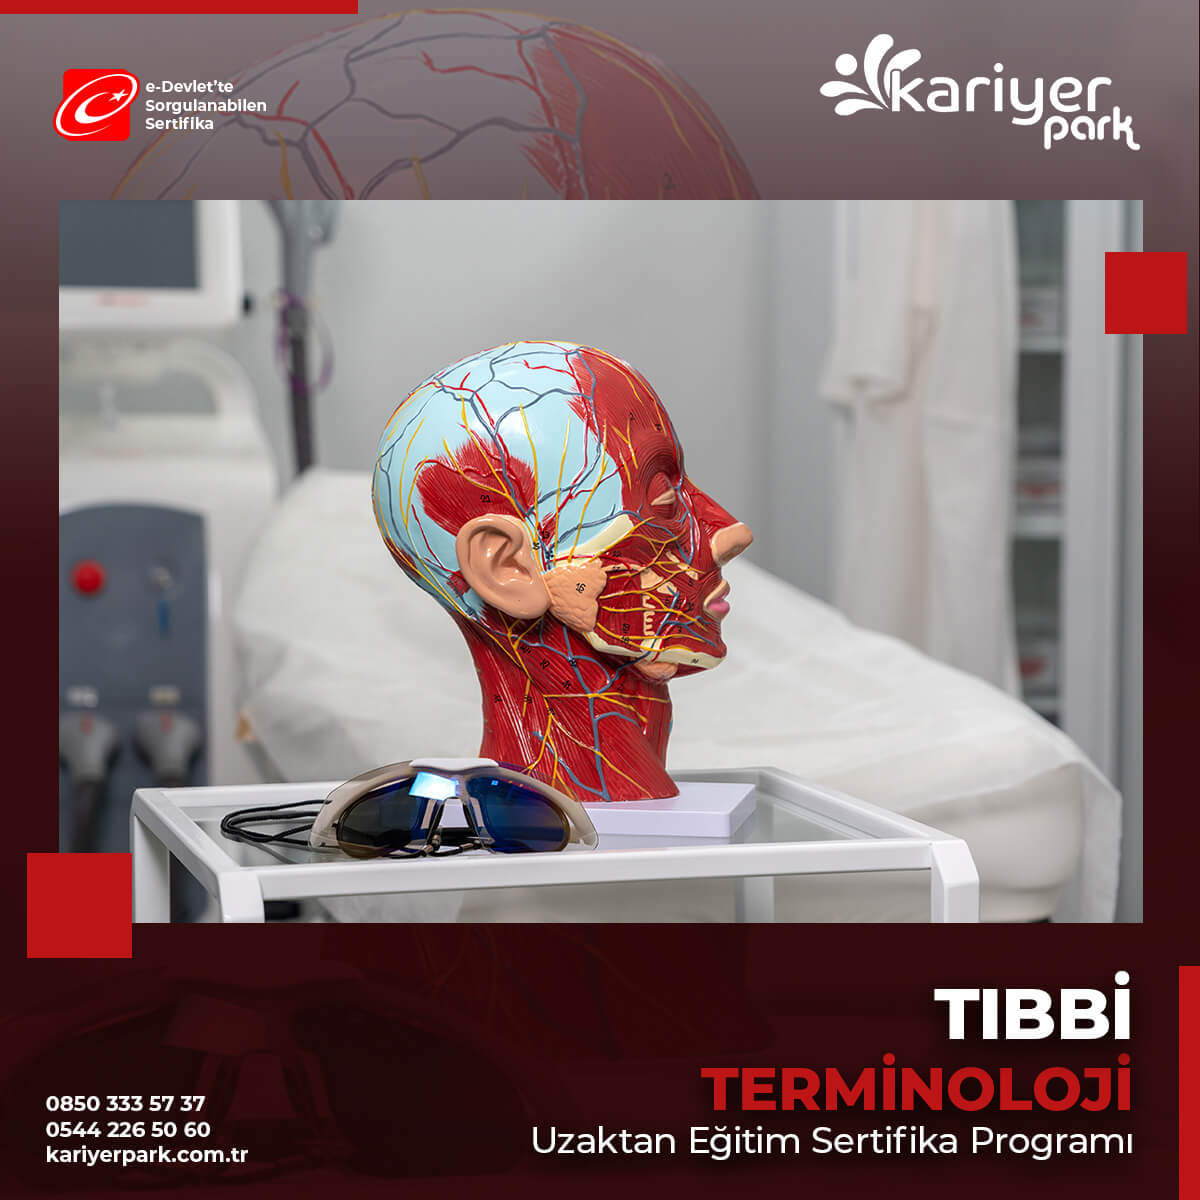 Tıbbi Terminoloji; İnsan organlarını, sistemleri ve işlevlerini, hastalıkları, vücut bölgelerini, tıbbi terimlerin tamamını inceleyen ve öğreten bilim dalıdır.